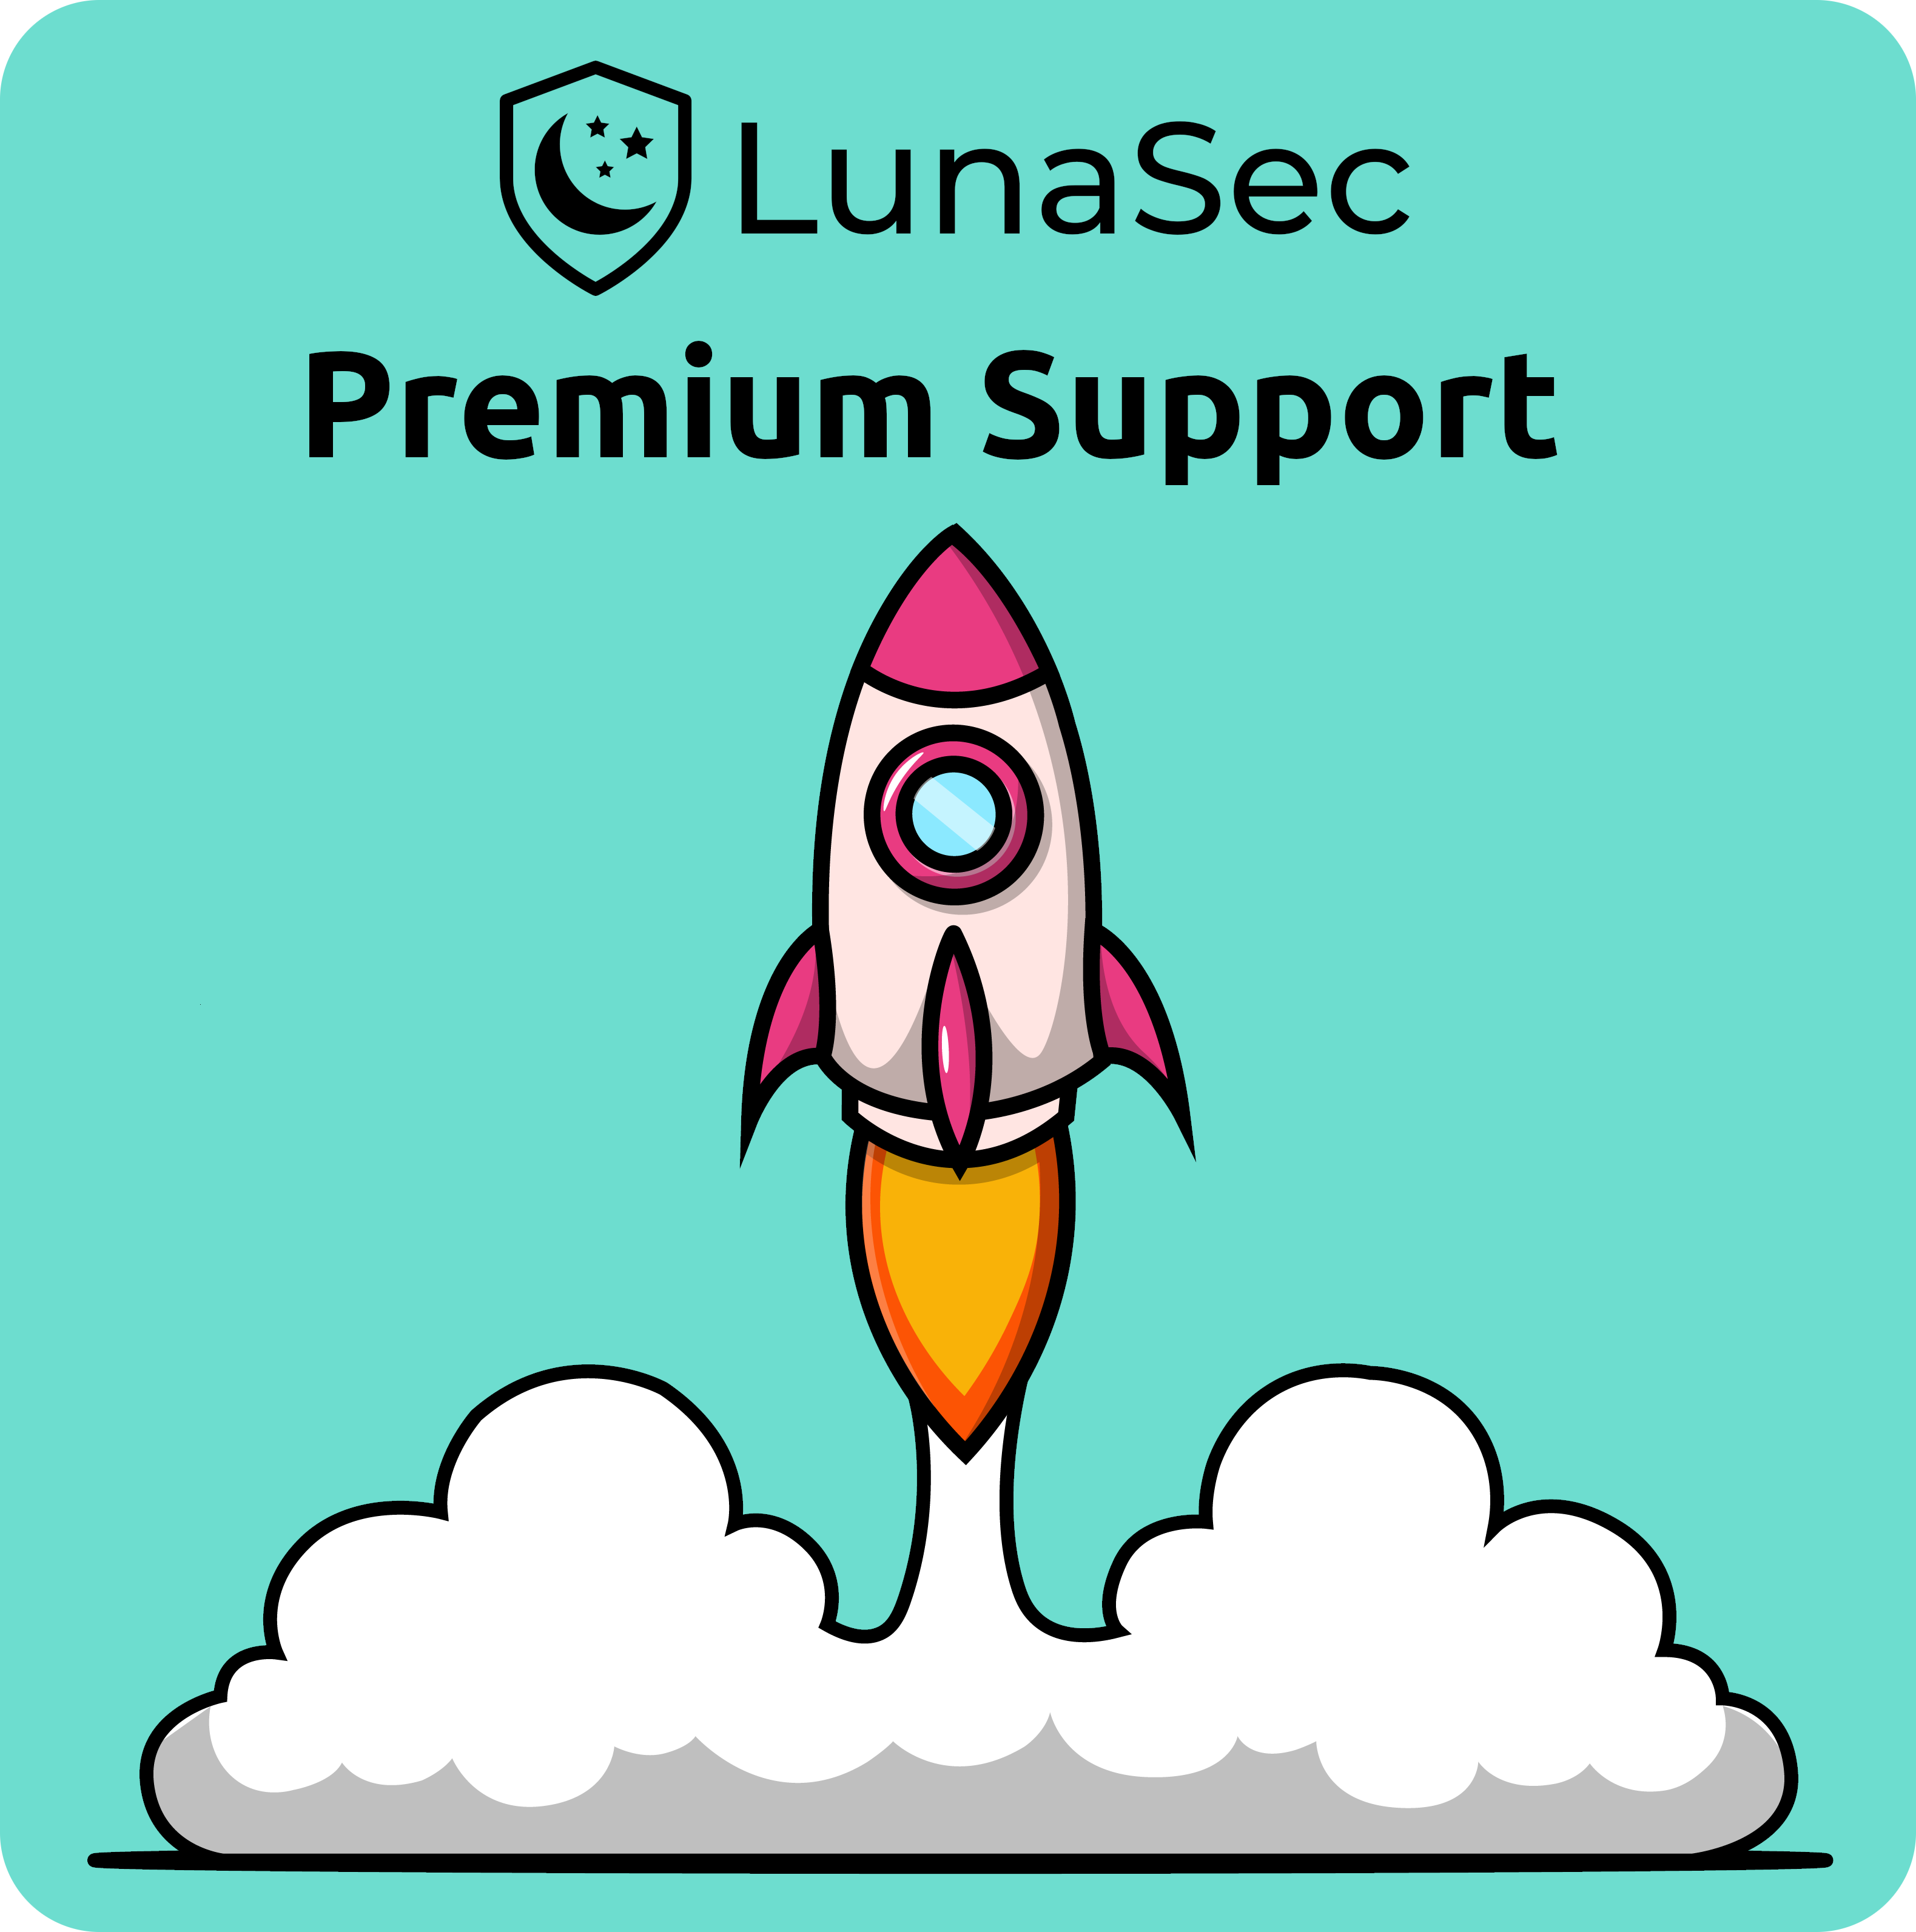 LunaSec Premium Support